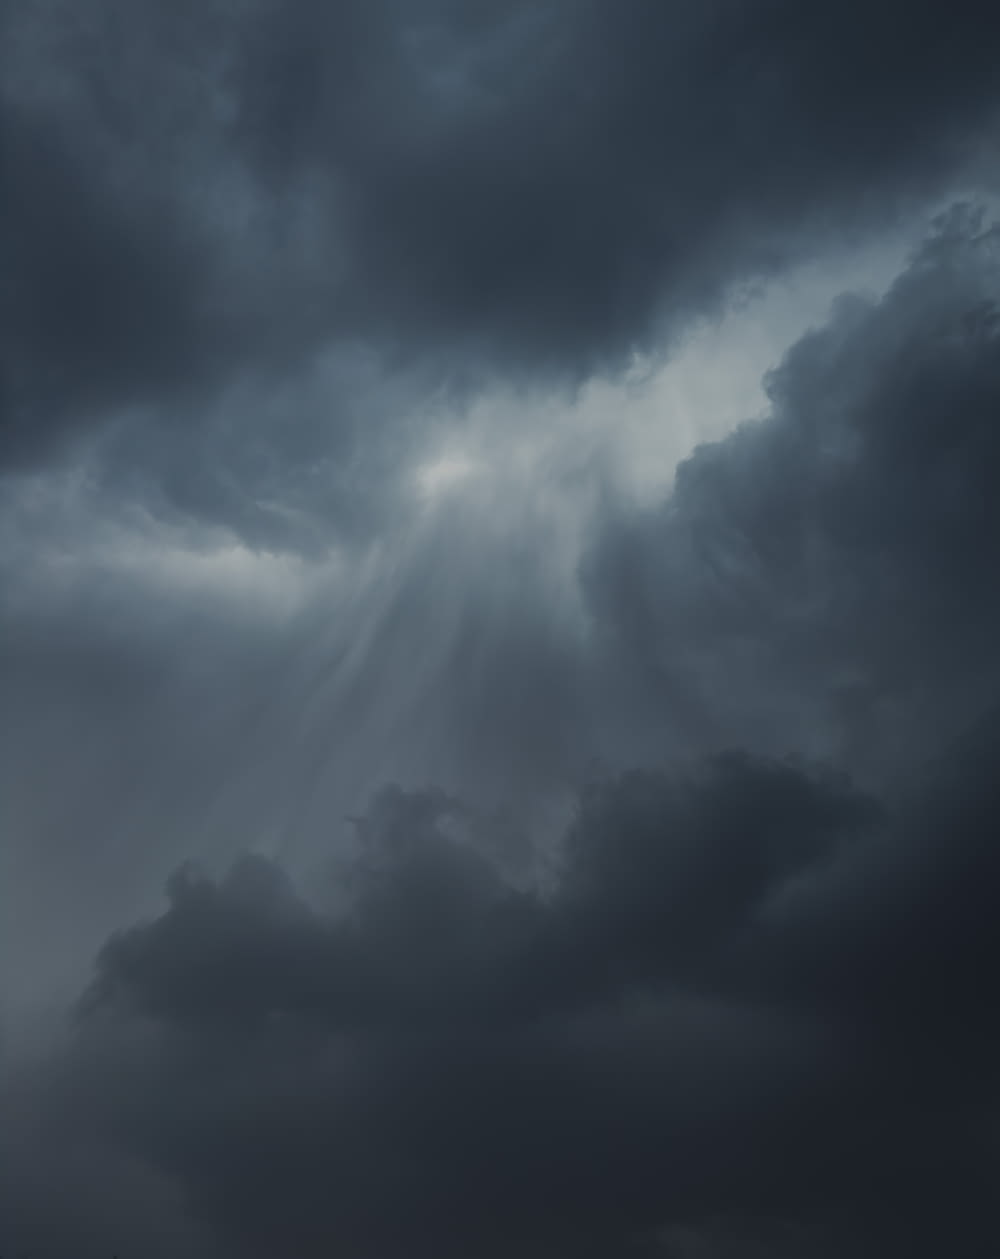 a plane flying through a dark cloudy sky